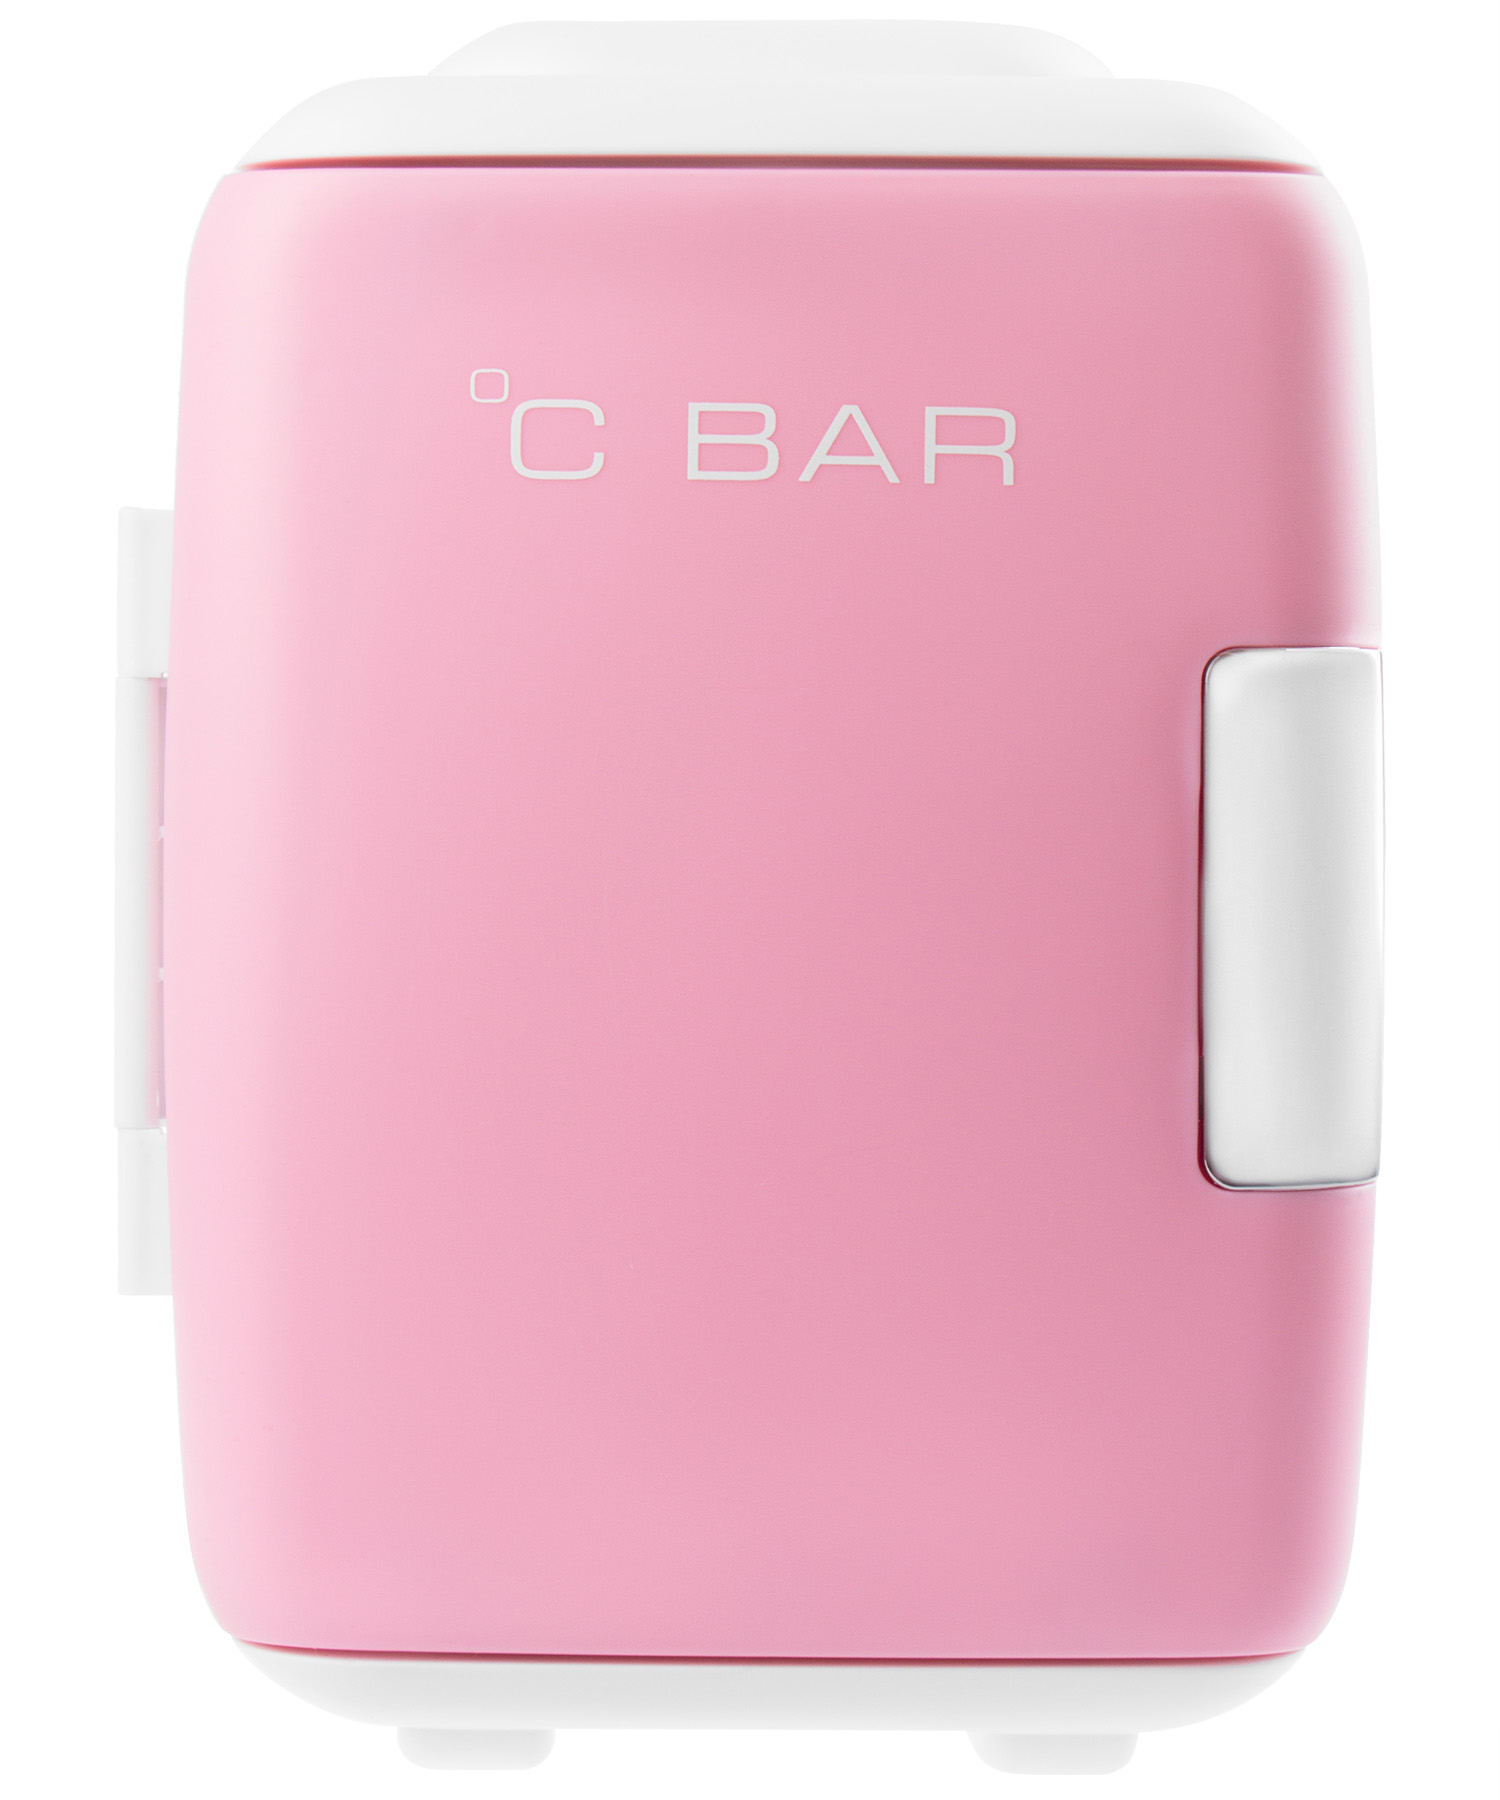 C.Bar Бьюти-холодильник розовый  5 л (C.Bar, Холодильники)